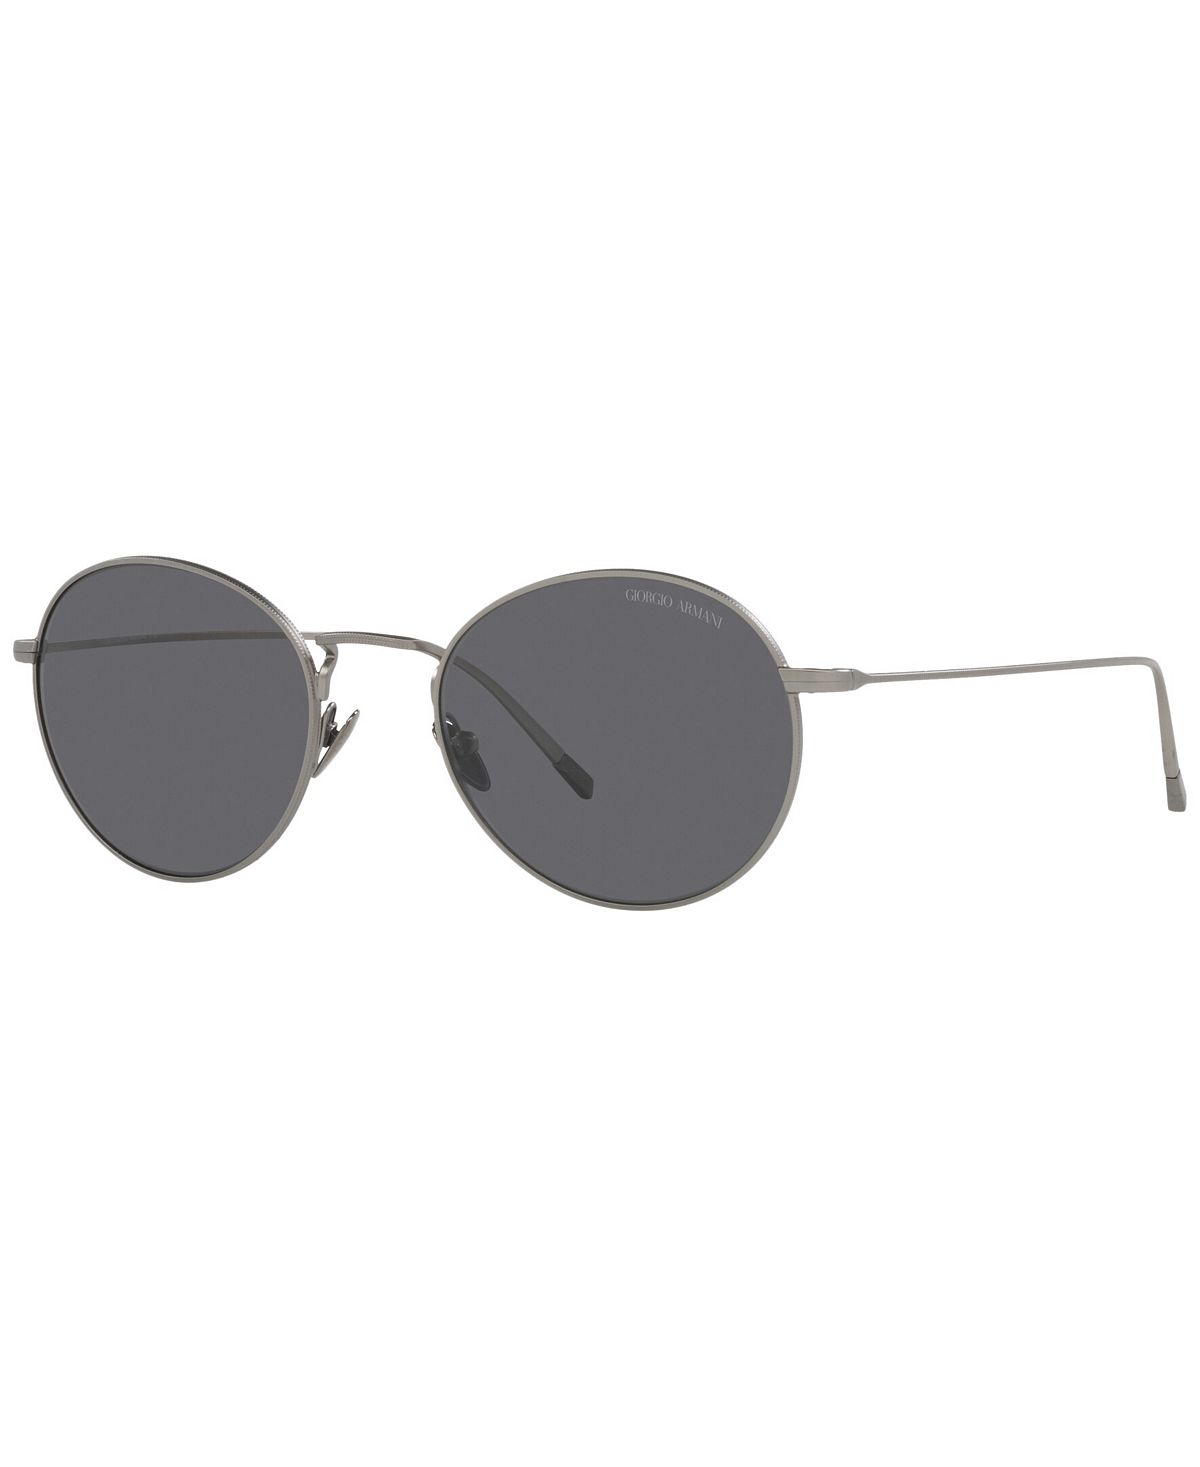 Мужские поляризованные солнцезащитные очки, AR6125 52 Giorgio Armani зажигалка lotus 6720 fusion gunmetal matte